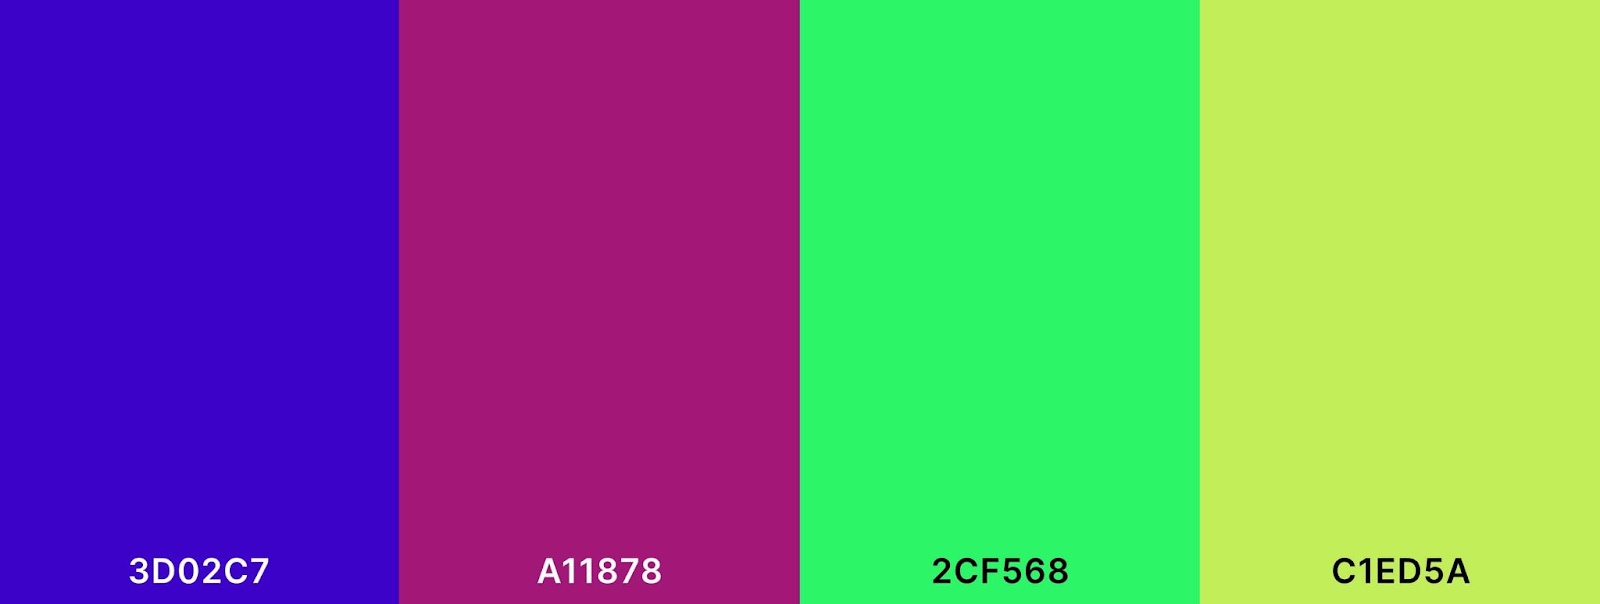 四色配色方案包括中蓝、红紫、春绿和黄绿.jpeg